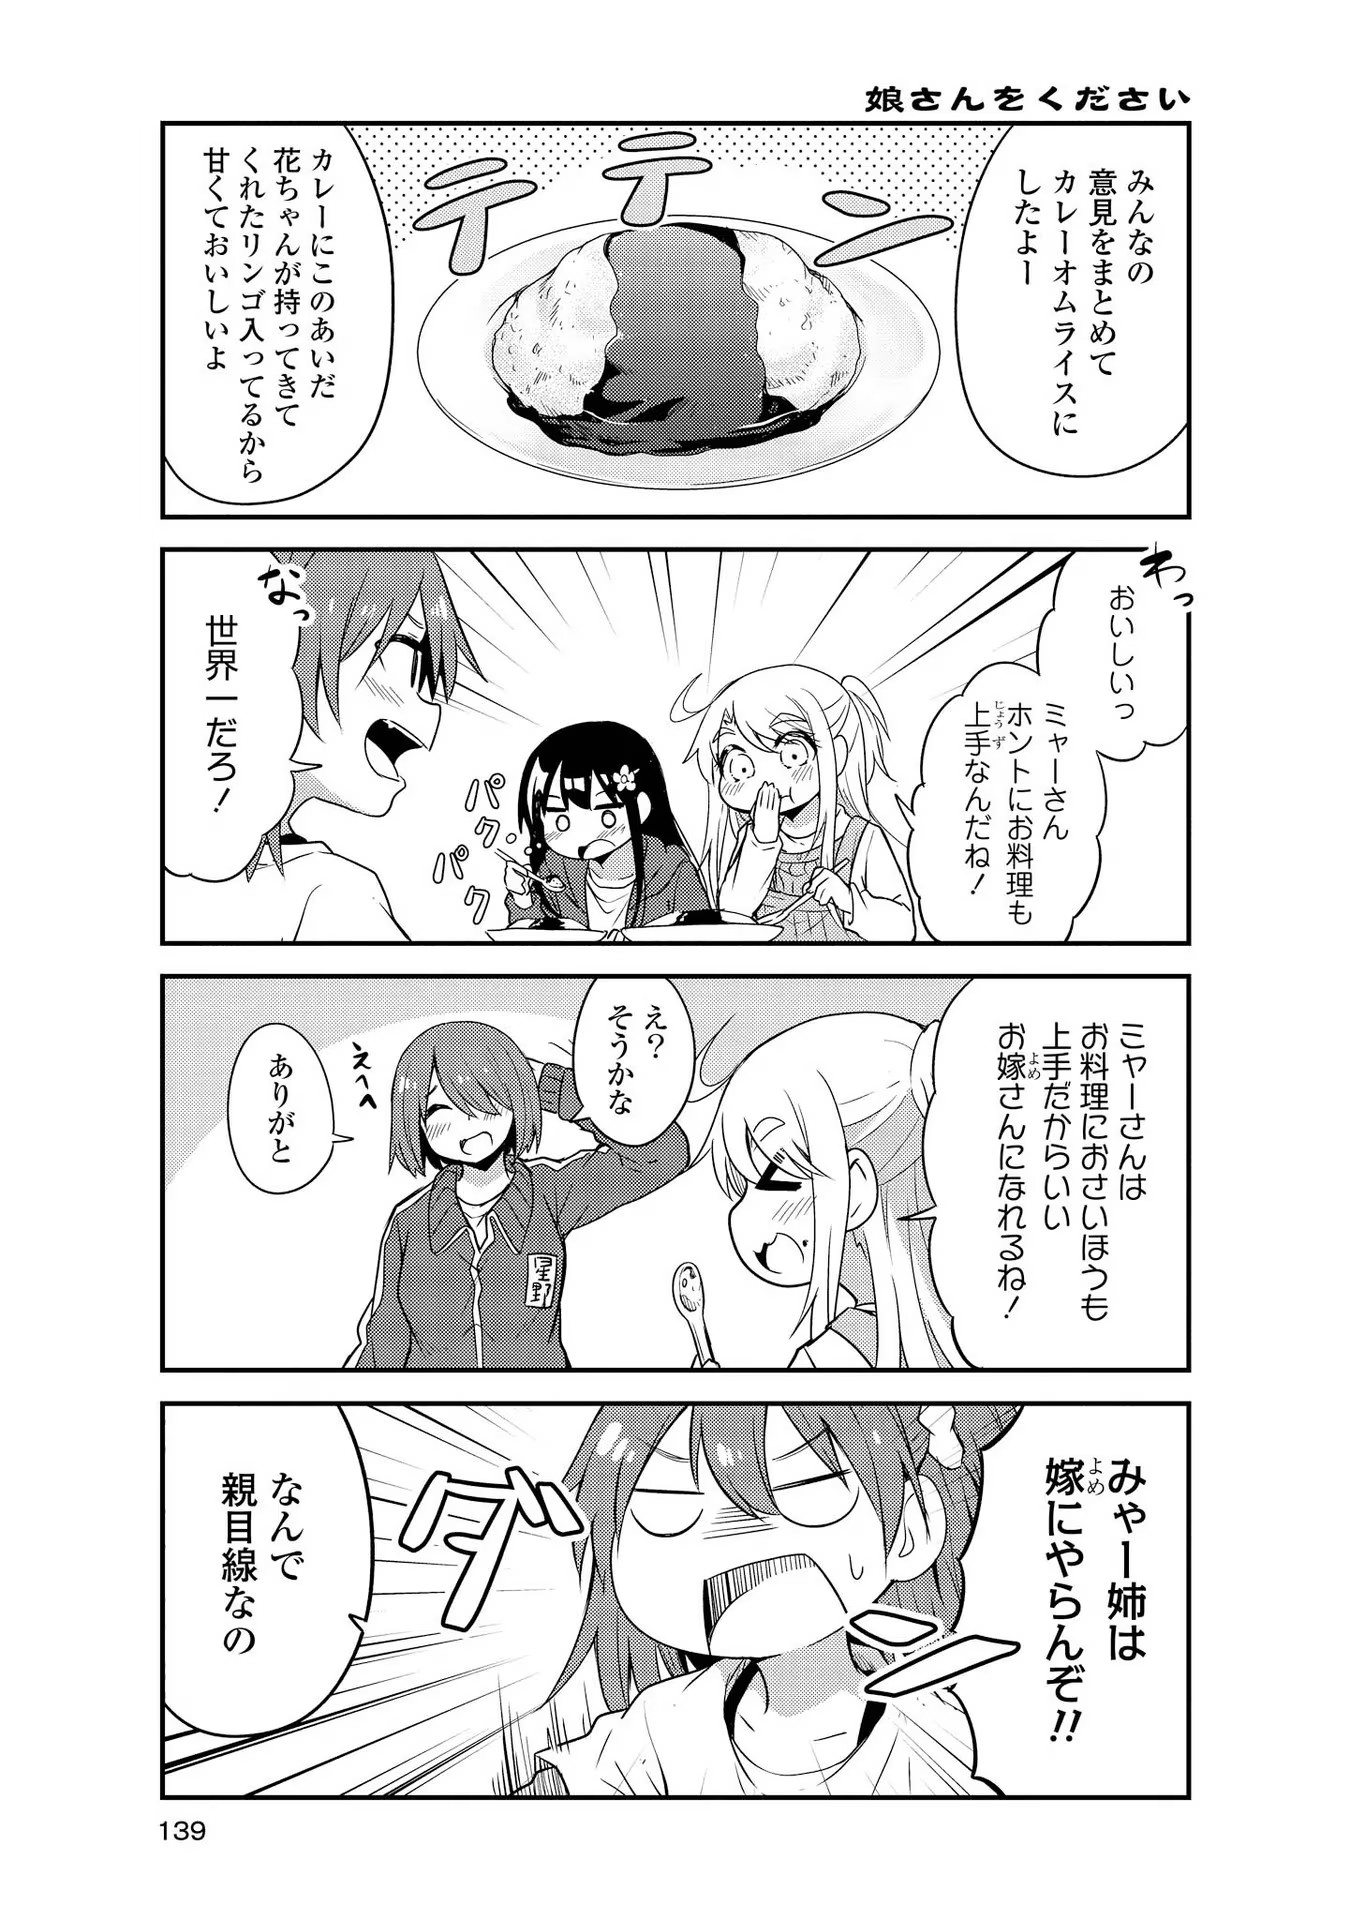 Watashi ni Tenshi ga Maiorita! - Chapter 29 - Page 5